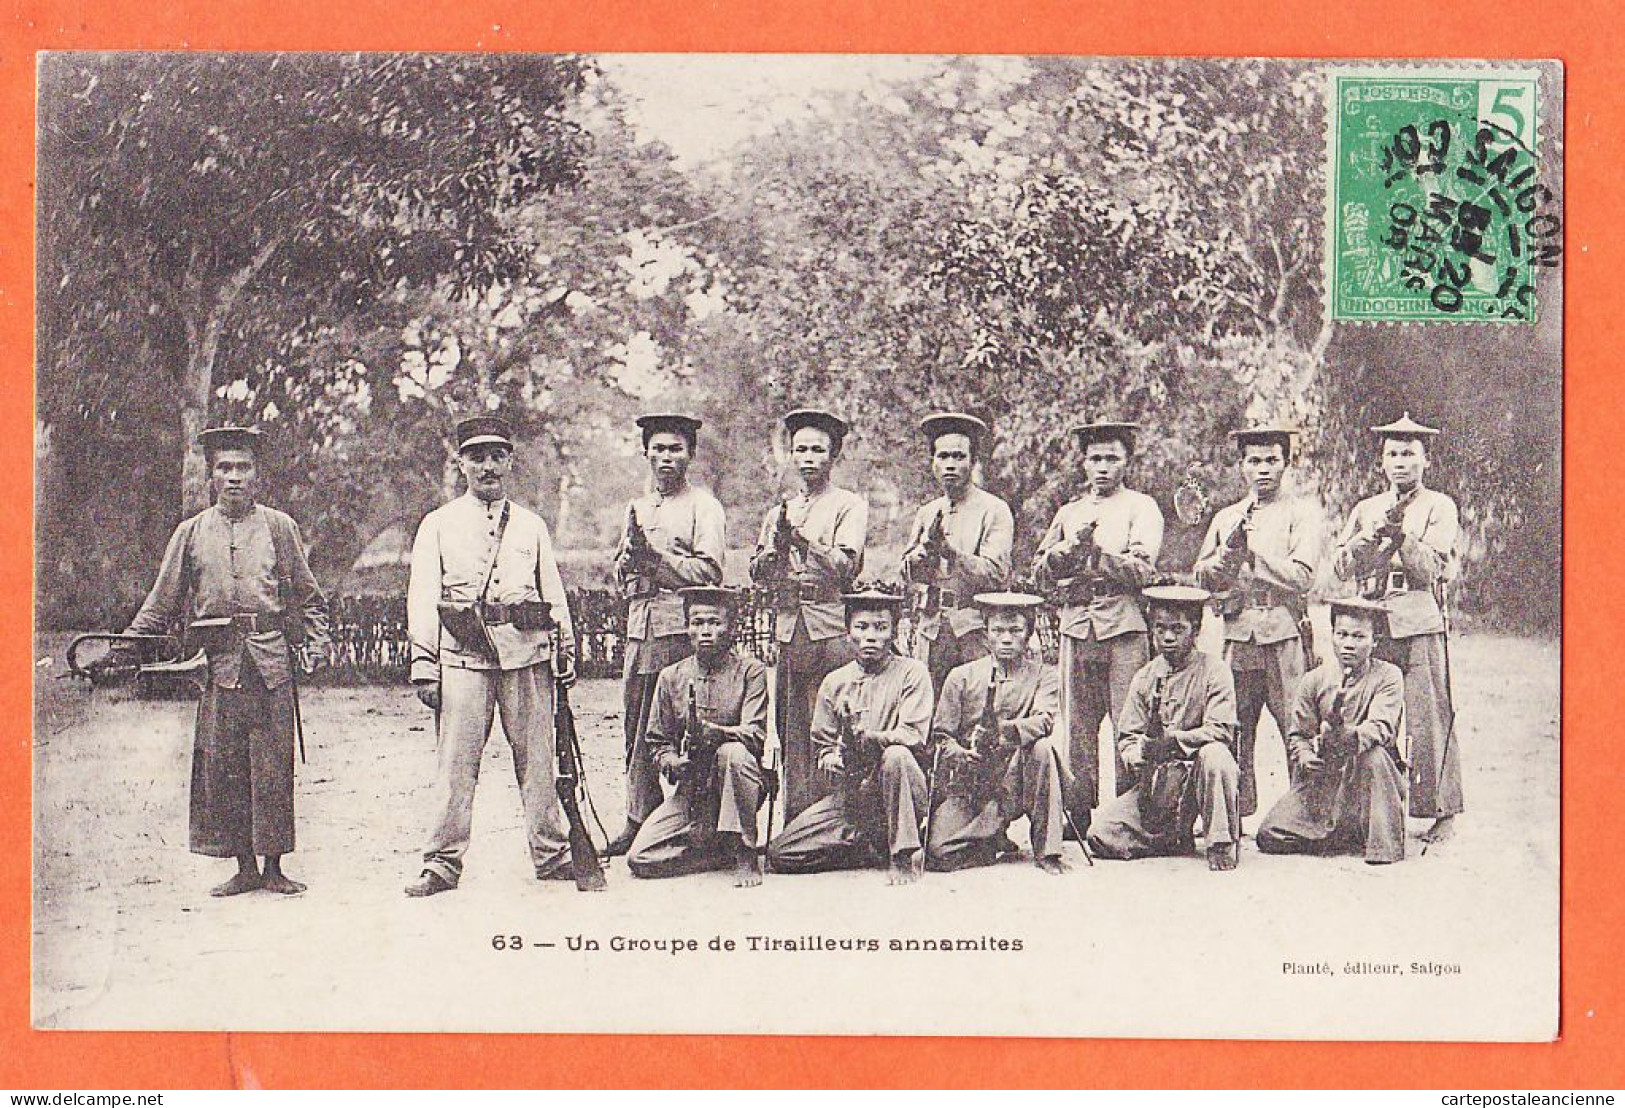 31111 / VietNam Groupe Tirailleurs Annamites Viet-Nam 1908 à ESTRUC DEVILLA Peyrac Minervois Edi. PLANTE Saigon 63 - Vietnam